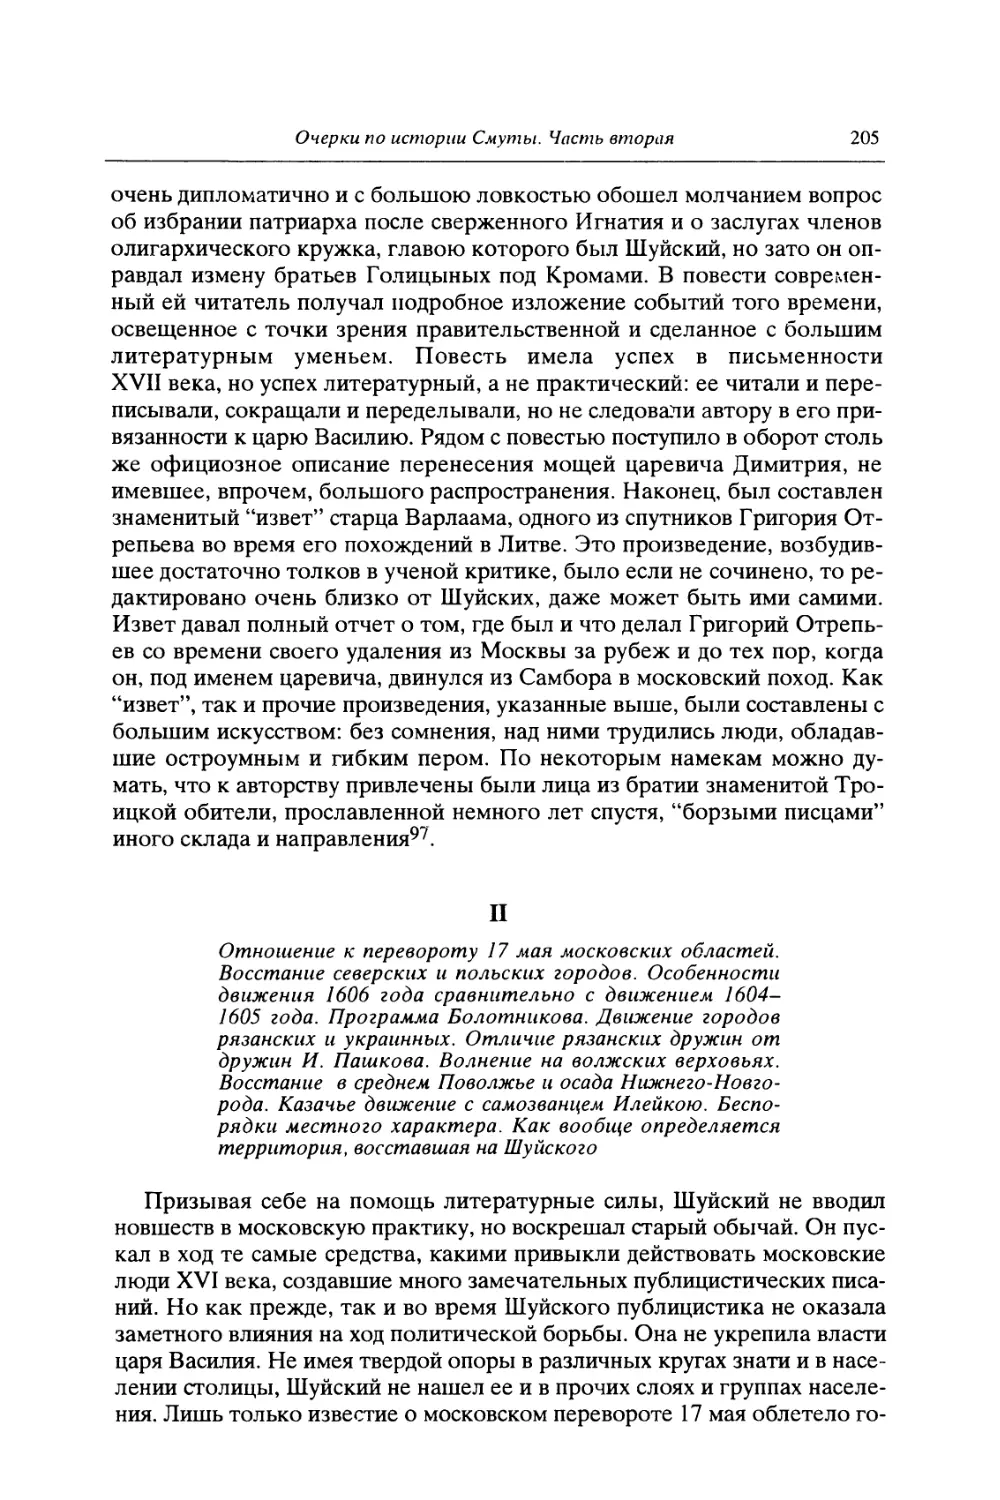 II. Отношение к перевороту 17 мая московских областей. Восстание северских и польских городов